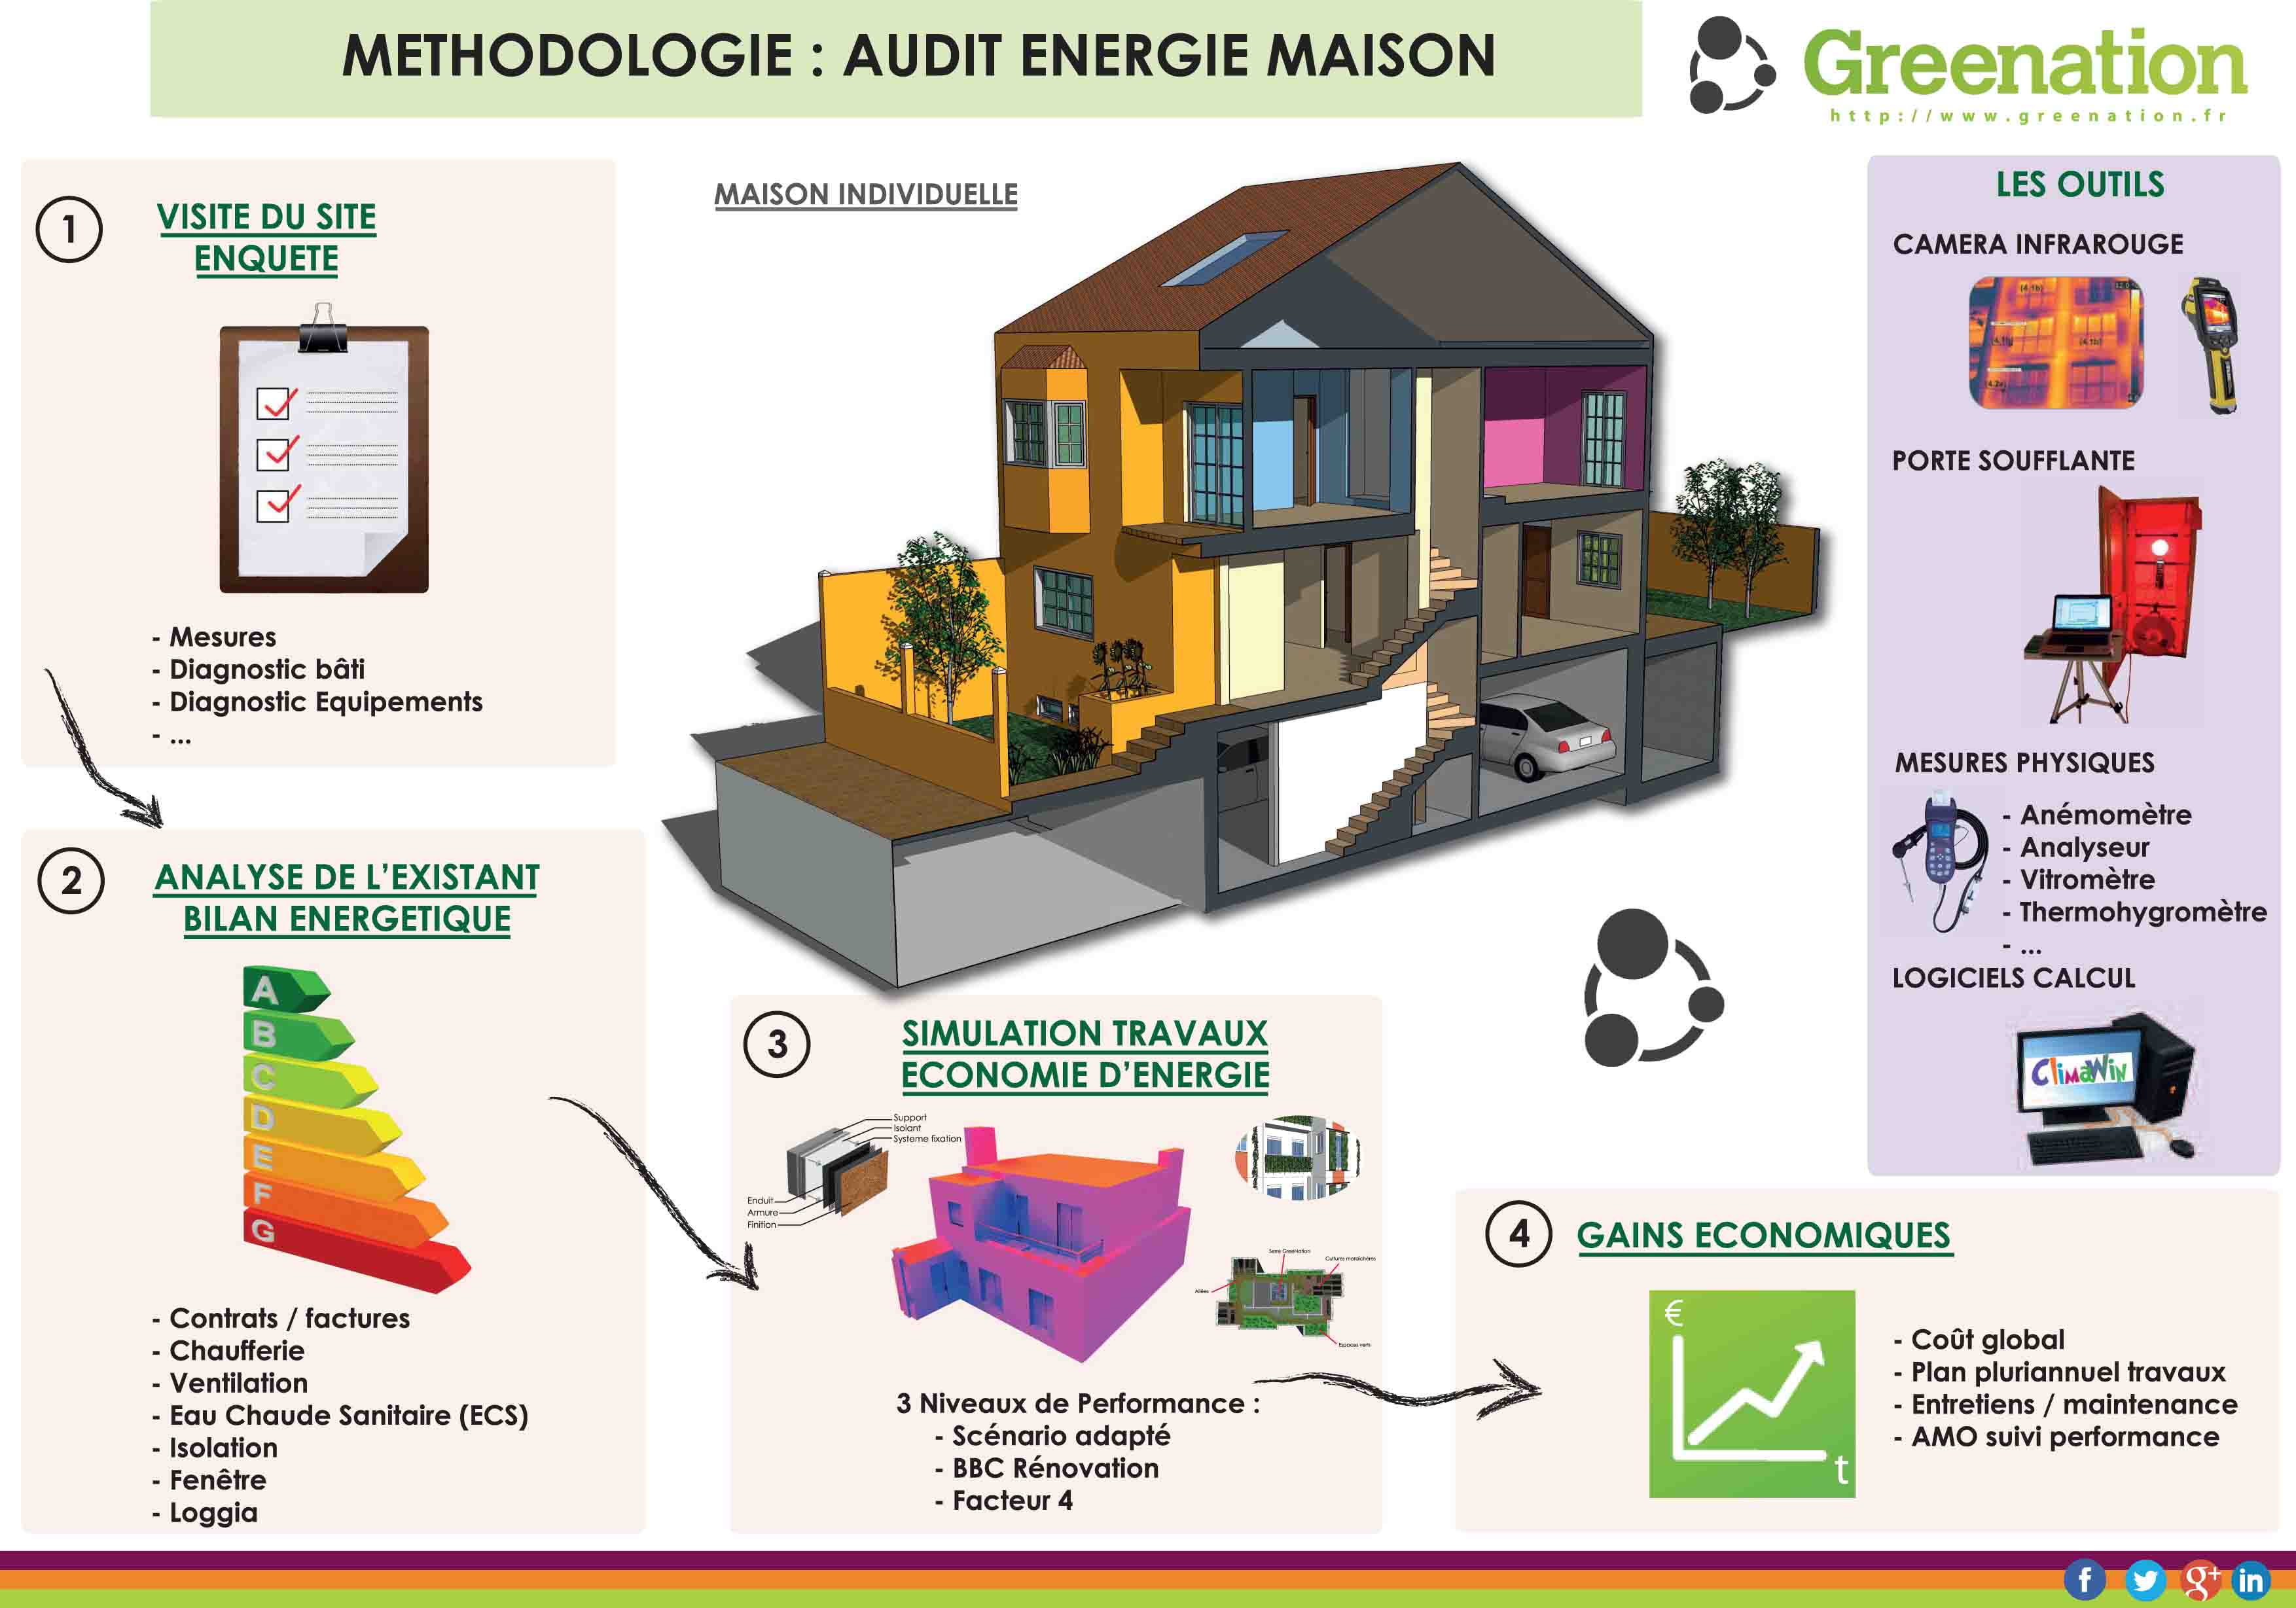 Audit énergétique pour maison individuelle par les spécialistes de l'énergie Greenation